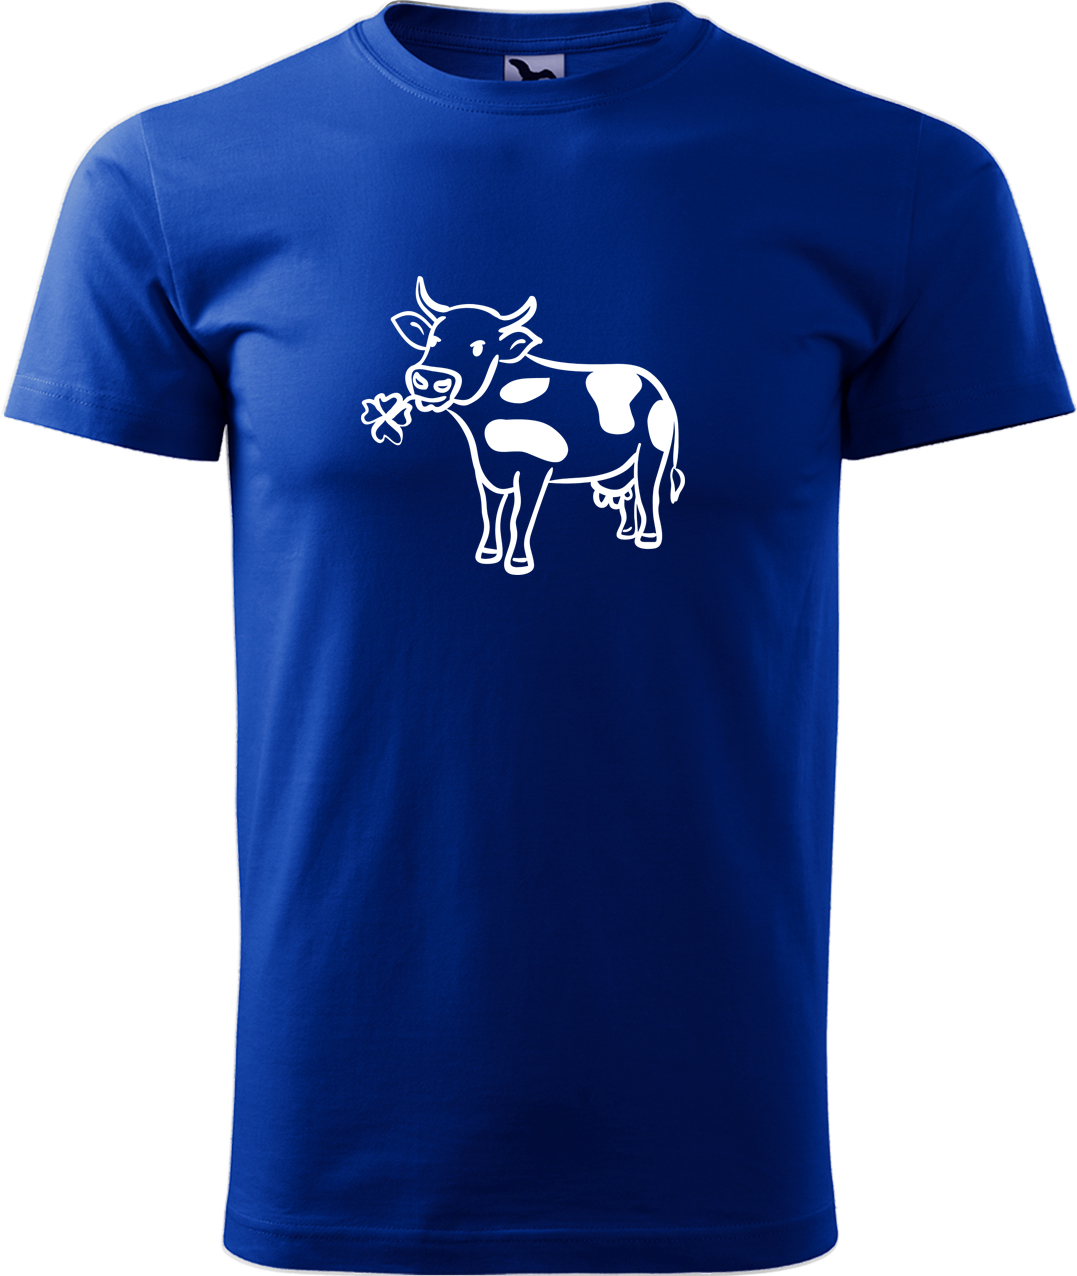 Pánské tričko s krávou - Kravička a jetel Velikost: L, Barva: Královská modrá (05), Střih: pánský